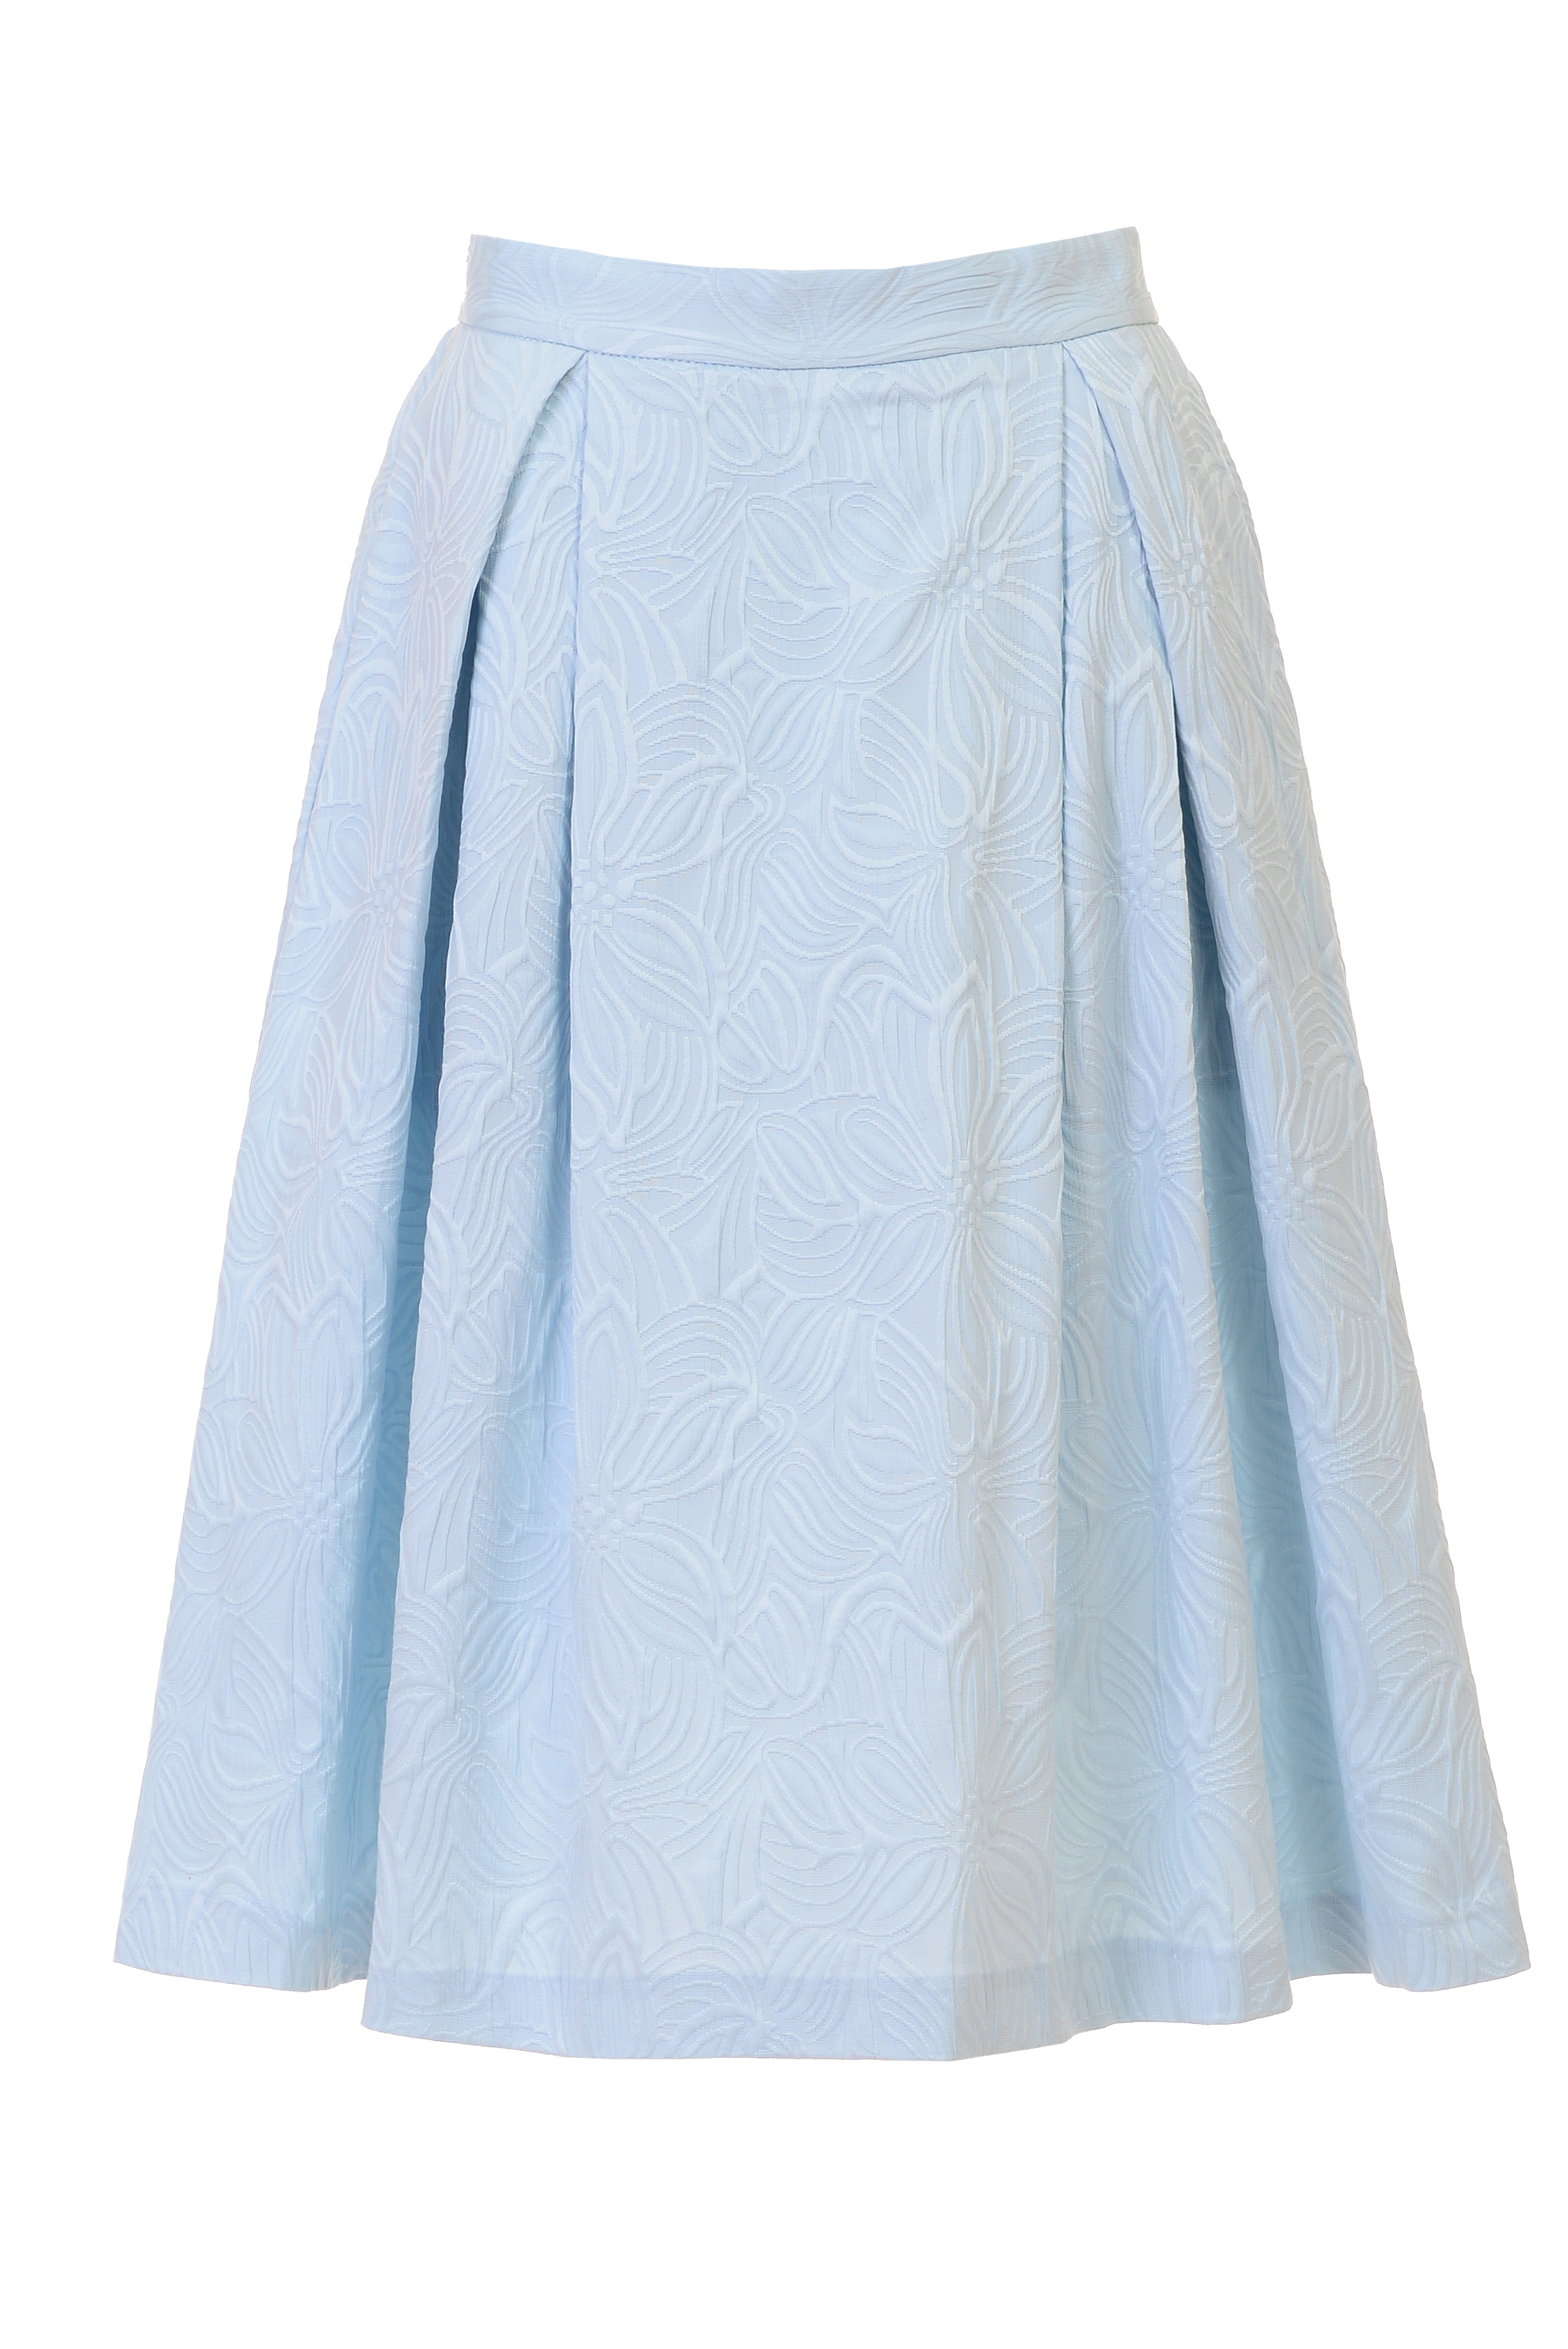 Пышная юбка из жаккардового материала (арт. baon B477027), размер M, цвет белый Пышная юбка из жаккардового материала (арт. baon B477027) - фото 3